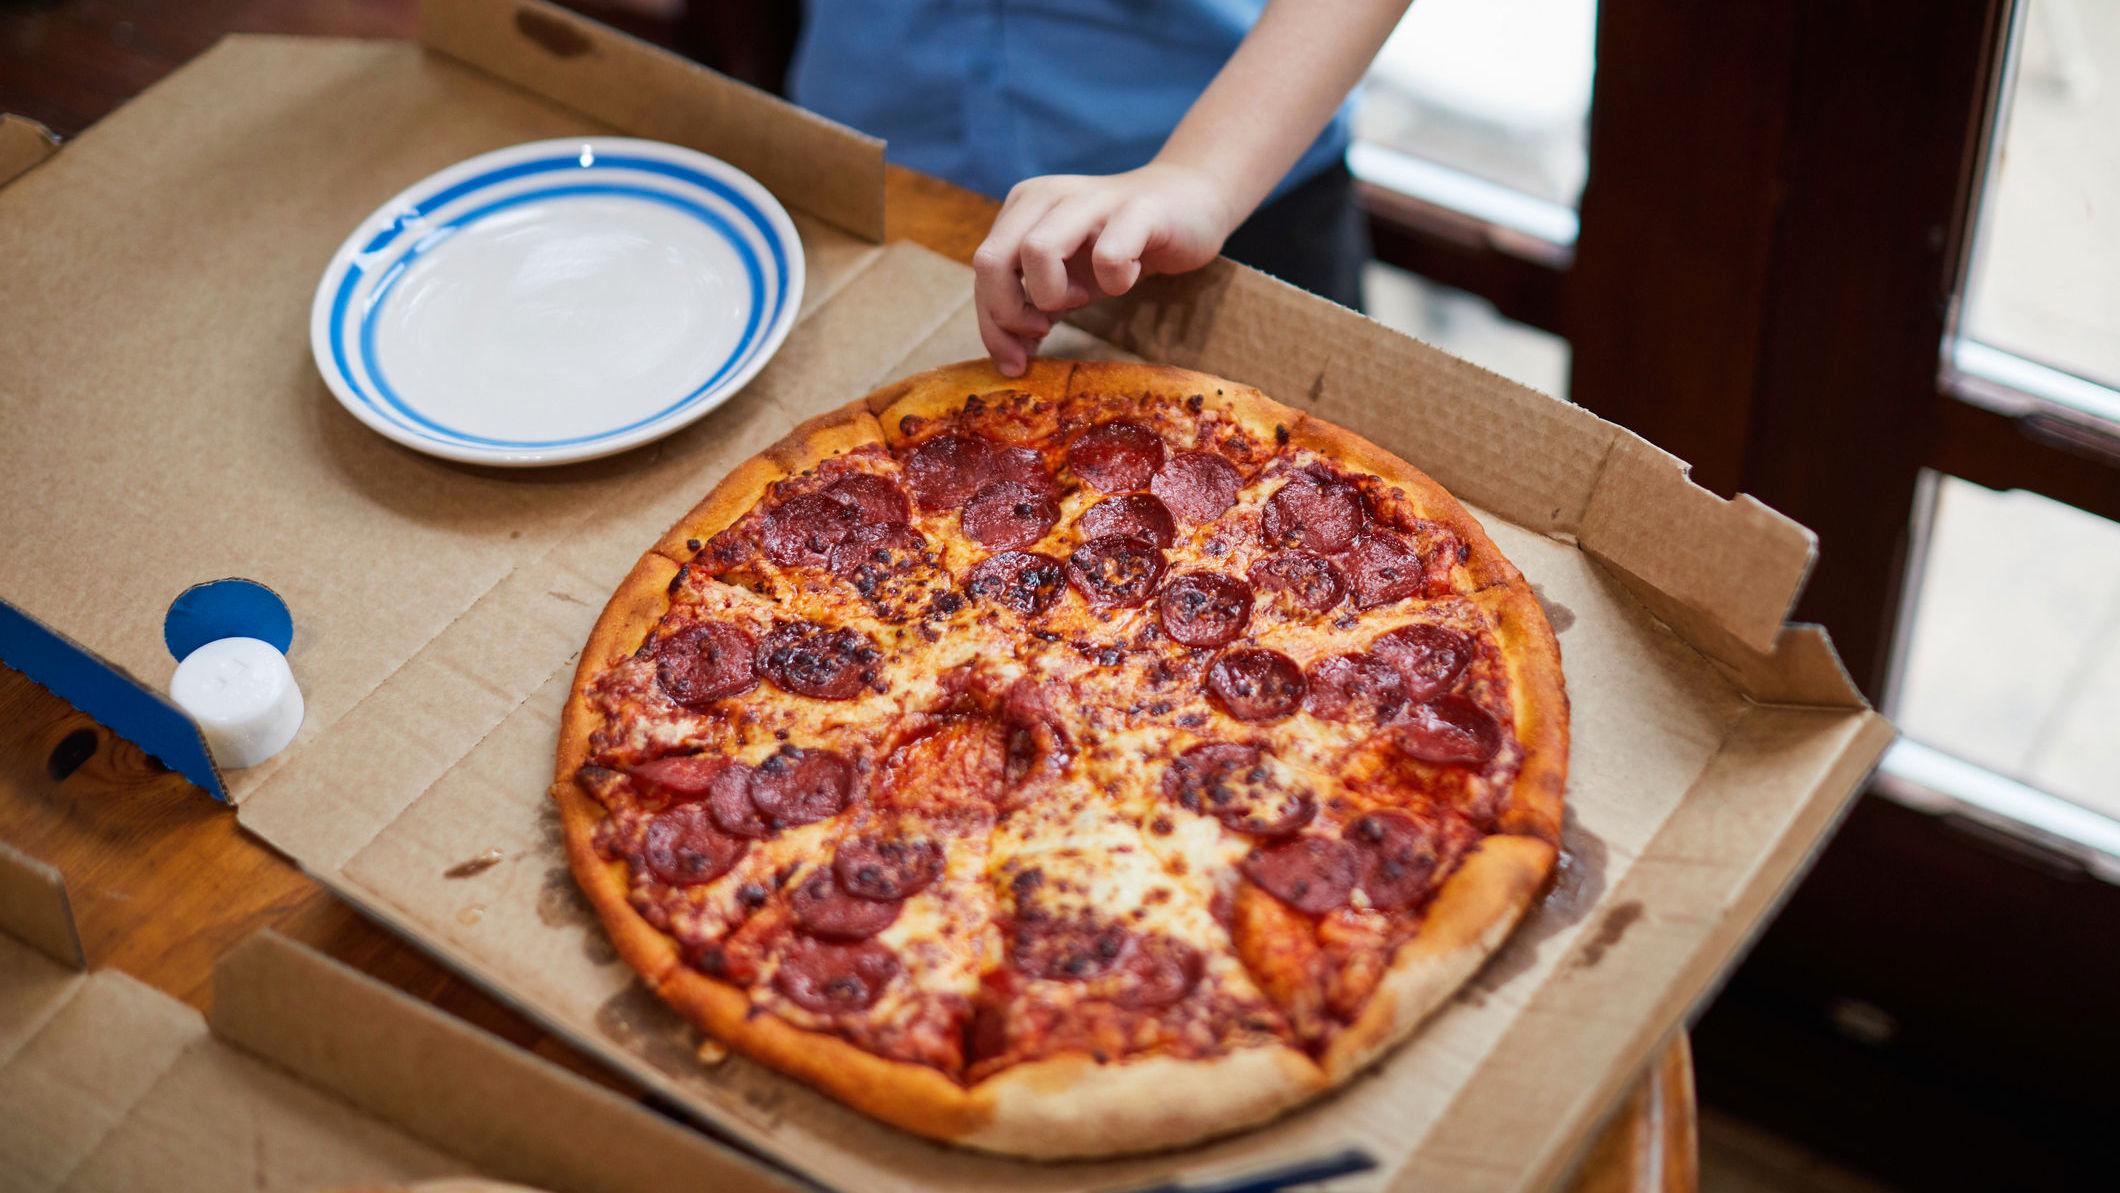 FETTSØL: Pizzaesker som er veldig sølete skal kastes i restavfall. Hvis det bare er papiret under pizzaen som er sølete, kan du fjerne dette og resirkulere selve esken. Foto: Sally Anscombe/Getty Images